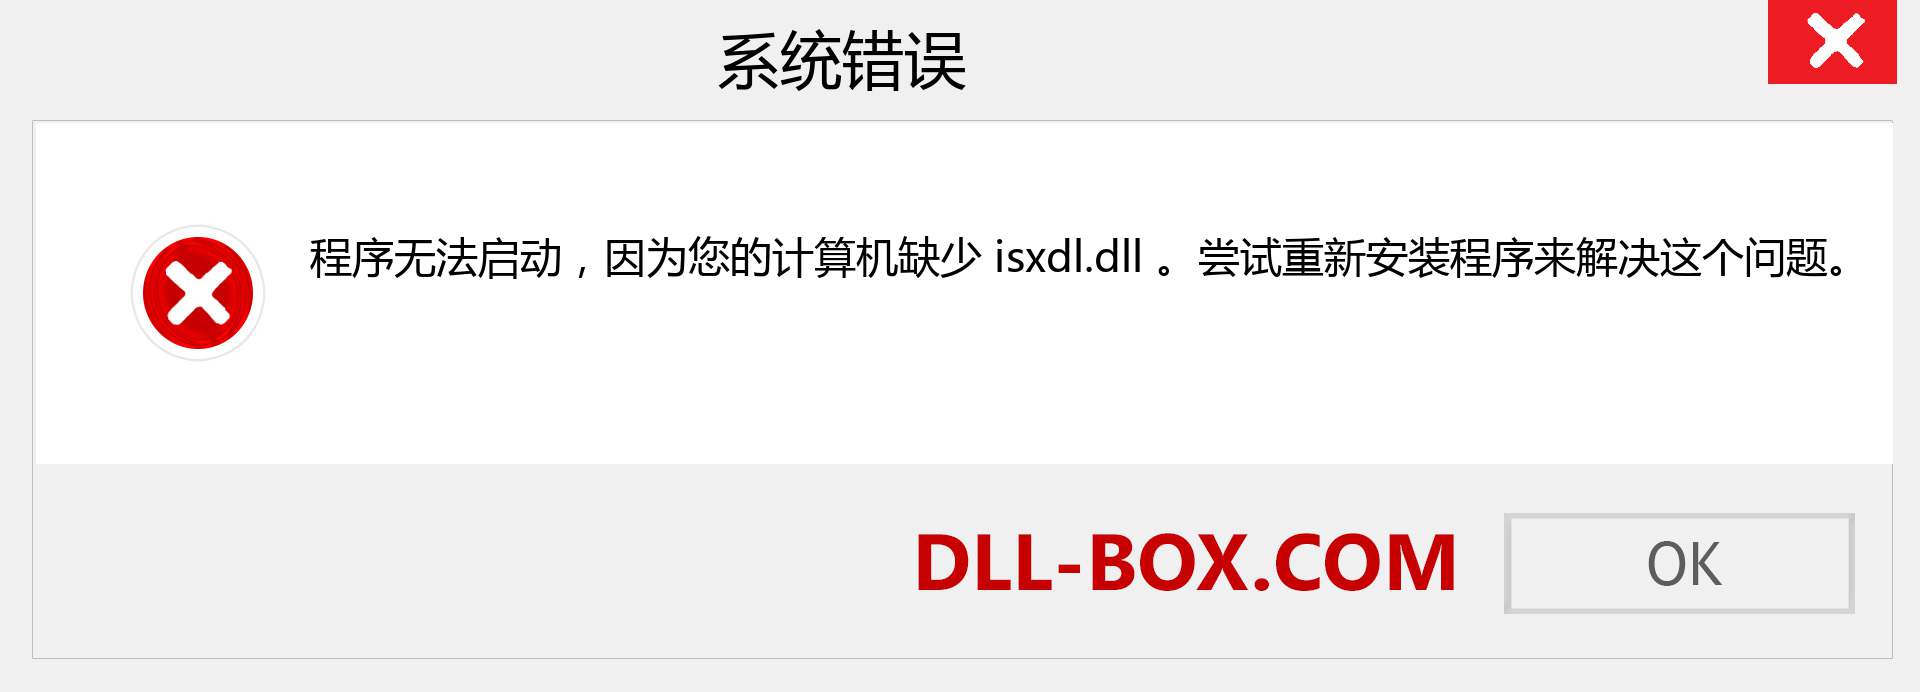 isxdl.dll 文件丢失？。 适用于 Windows 7、8、10 的下载 - 修复 Windows、照片、图像上的 isxdl dll 丢失错误